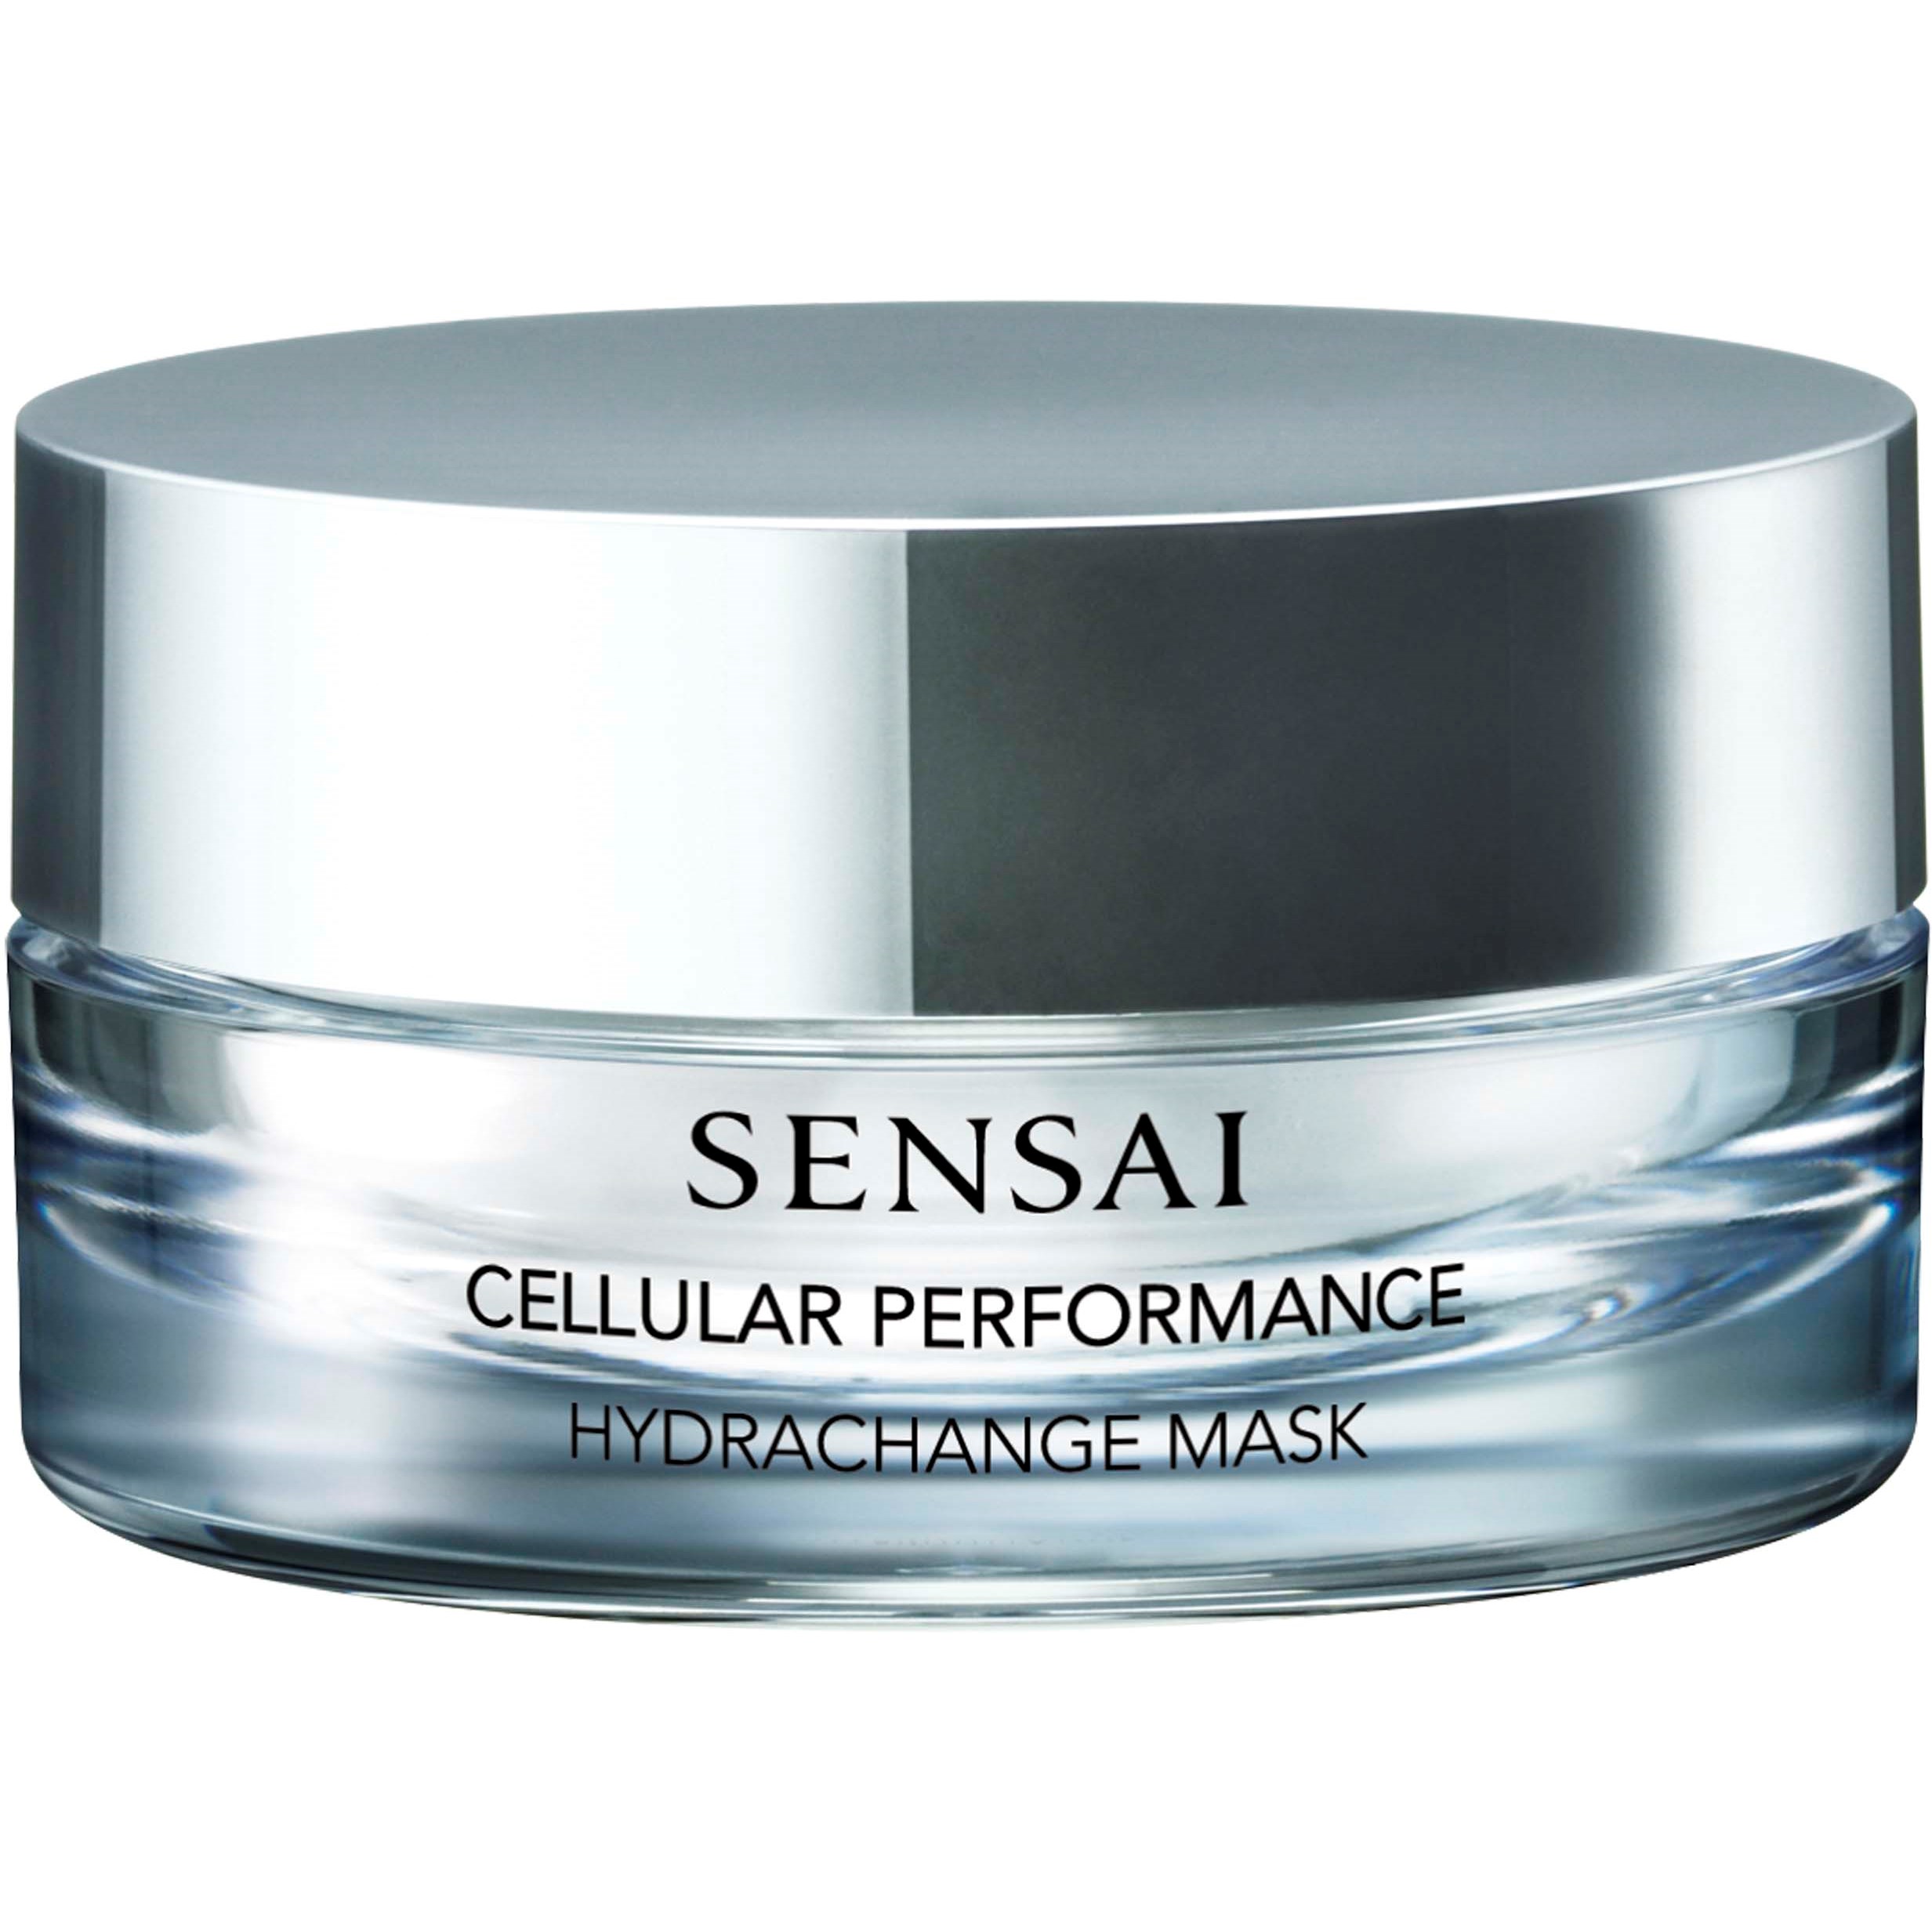 Bilde av Sensai Cellular Performance Hydrachange Mask 75 Ml